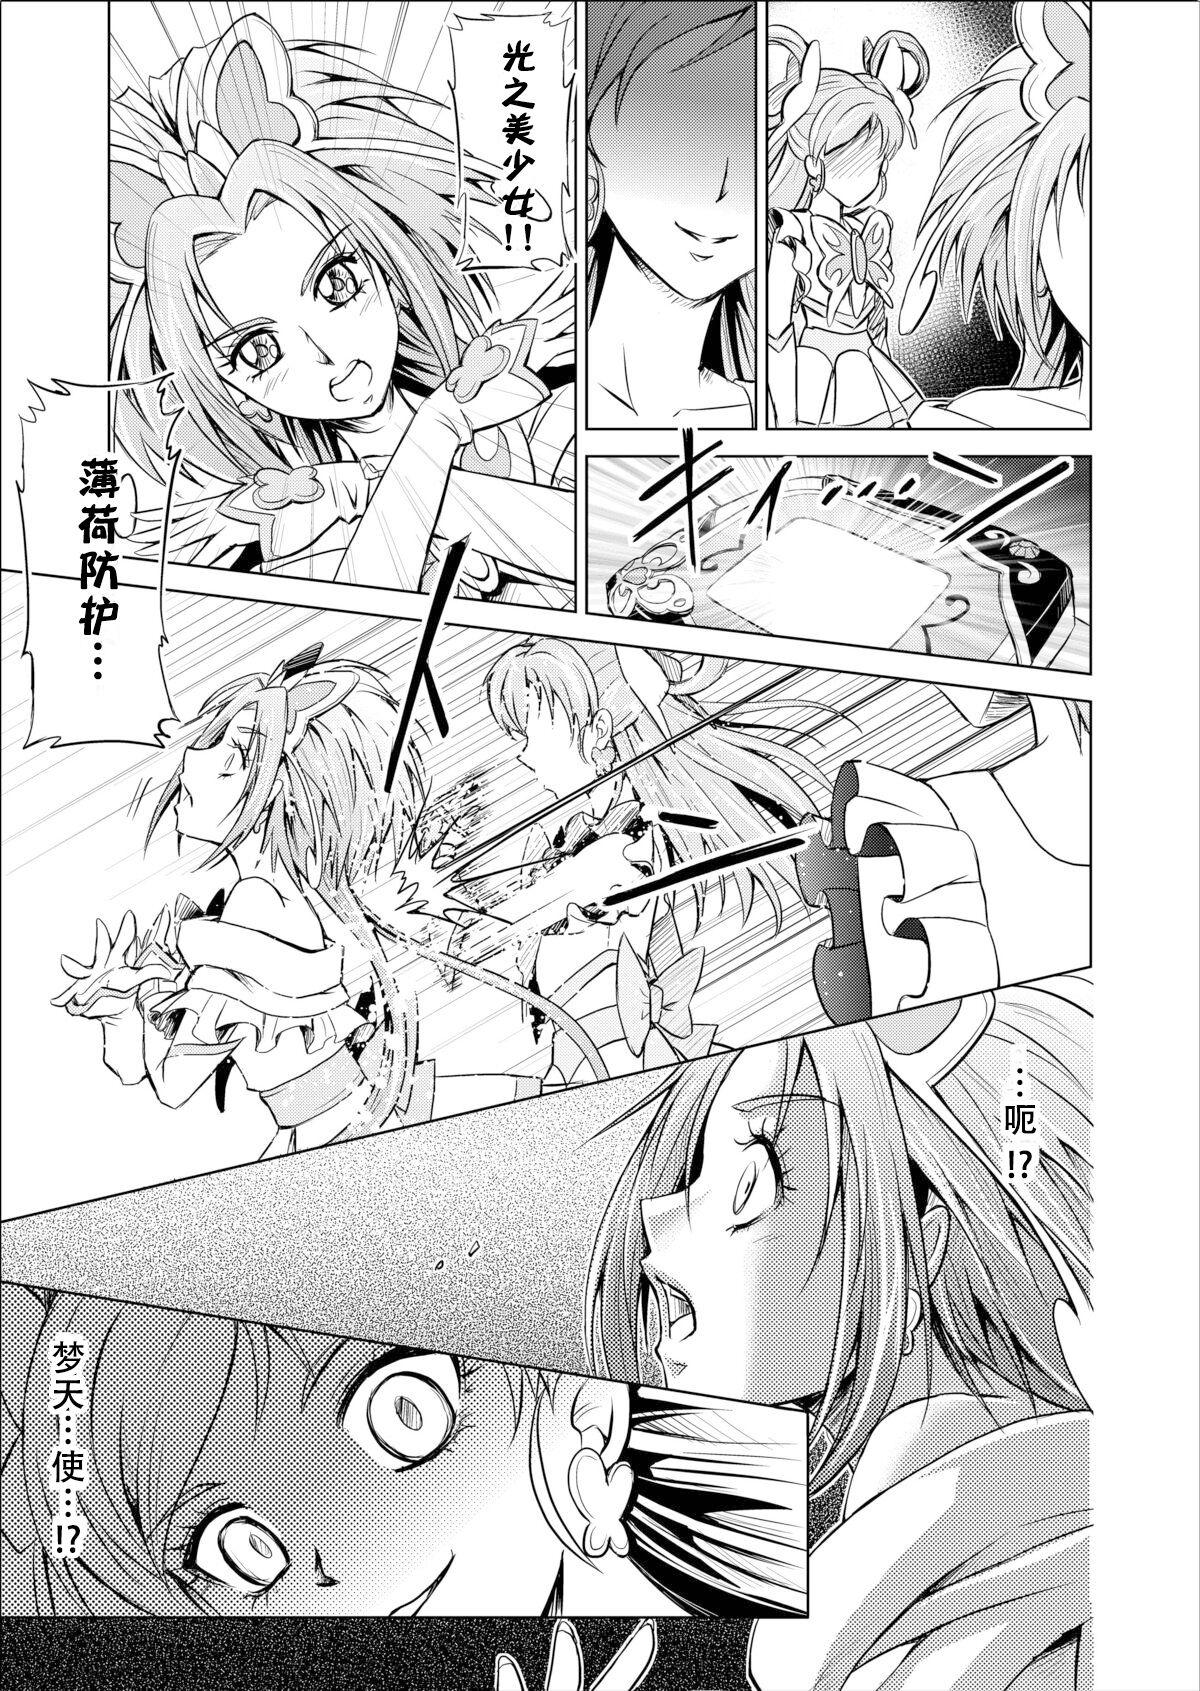 Rubbing [MACXE'S (monmon)] Mou Hitotsu no Ketsumatsu ~Henshin Heroine Kairaku Sennou Yes!! Precure 5 Hen~ 另一个结局 变身女英雄快乐洗脑 yes!! 光之美少女5篇 第三话 (Yes! PreCure 5) [Chinese] [LLQ个人汉化] - Yes precure 5 3some - Page 7